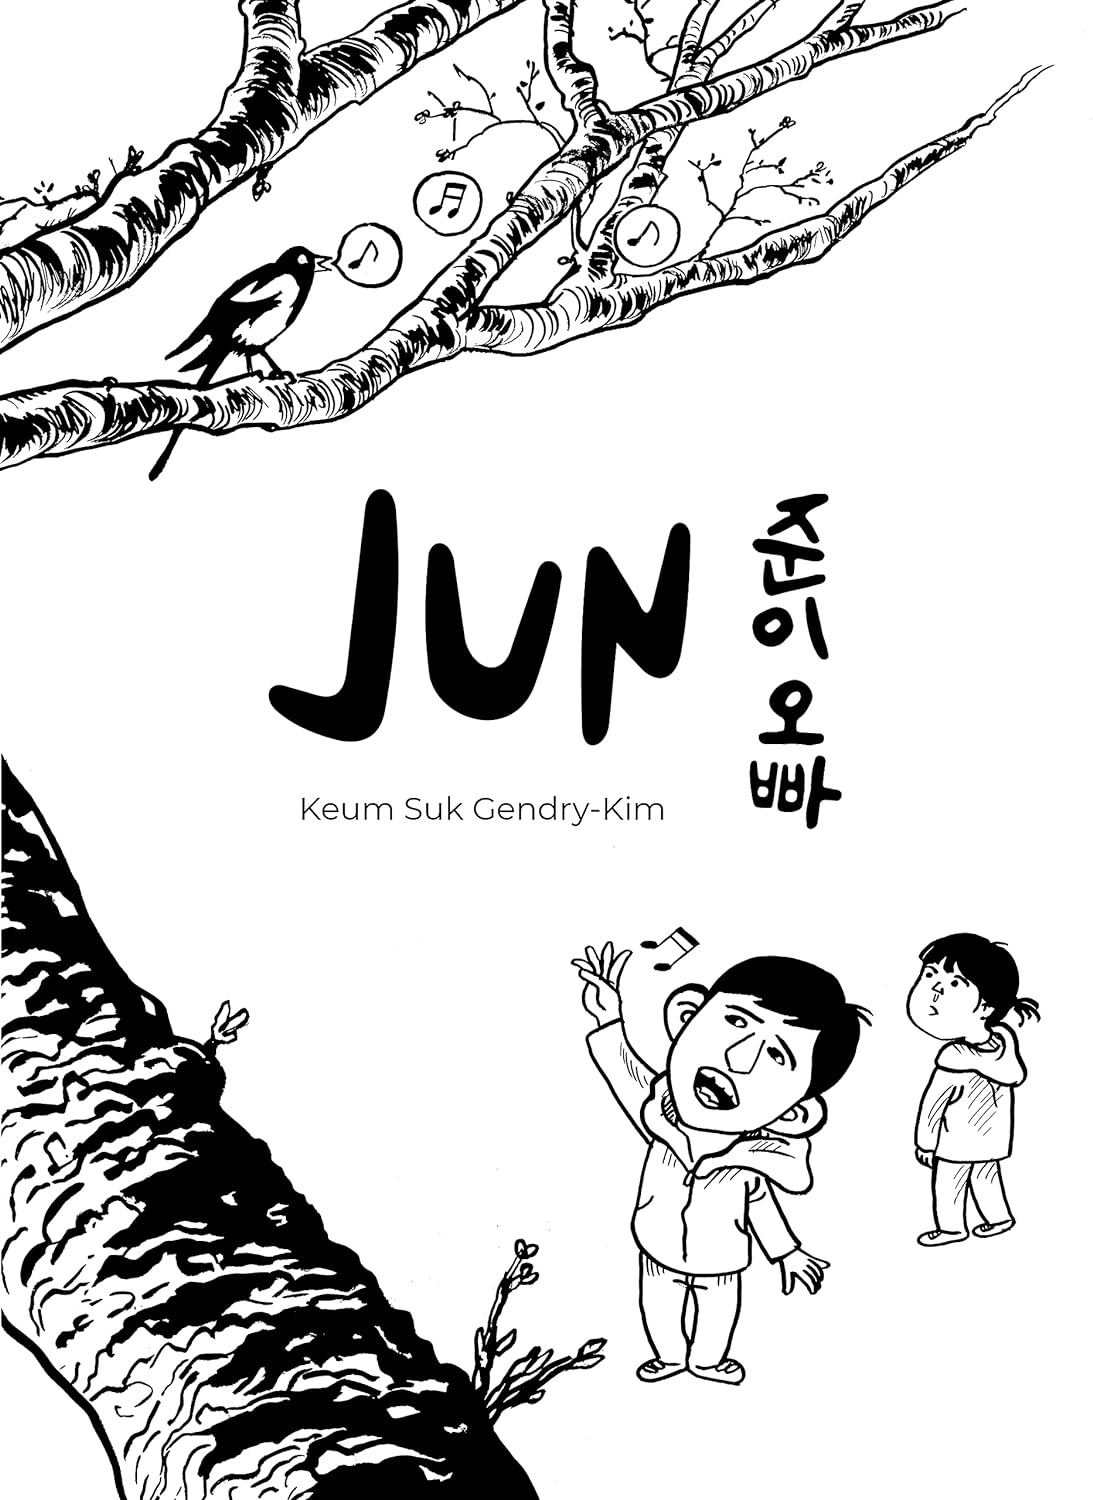 Copertina di "Jun" di Keum Suk Gendry-Kim (Bao Publishing, 2021)